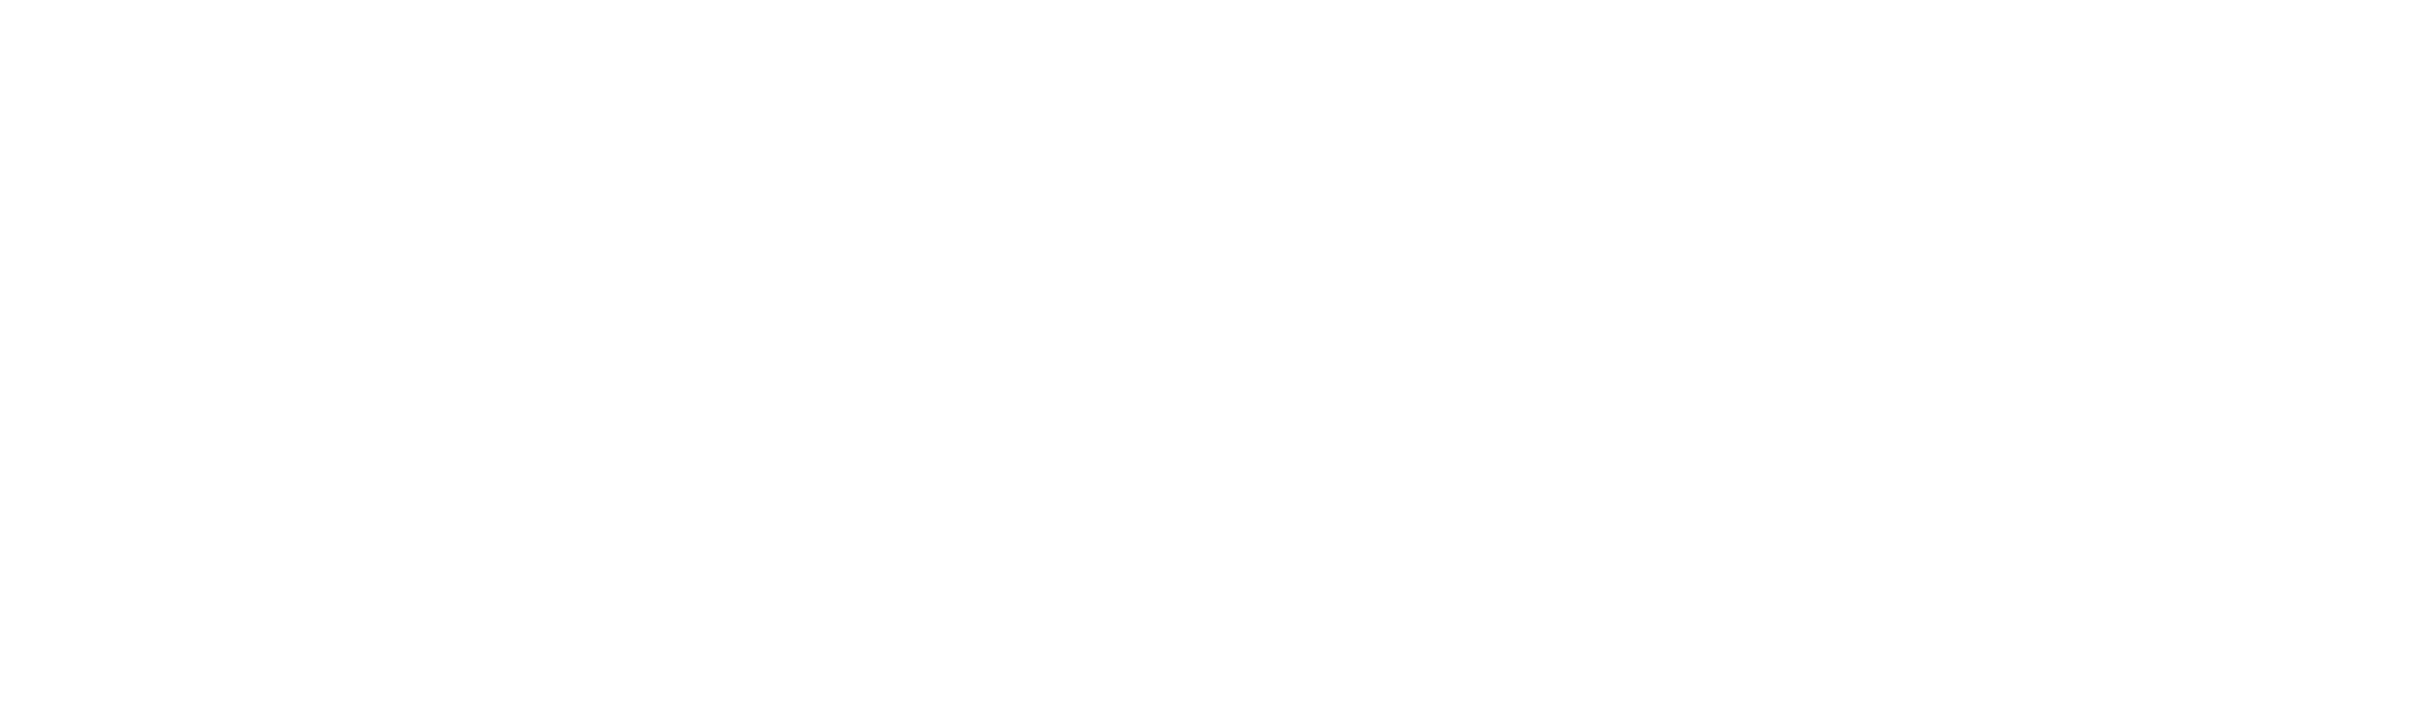 Gamedevjsweekly